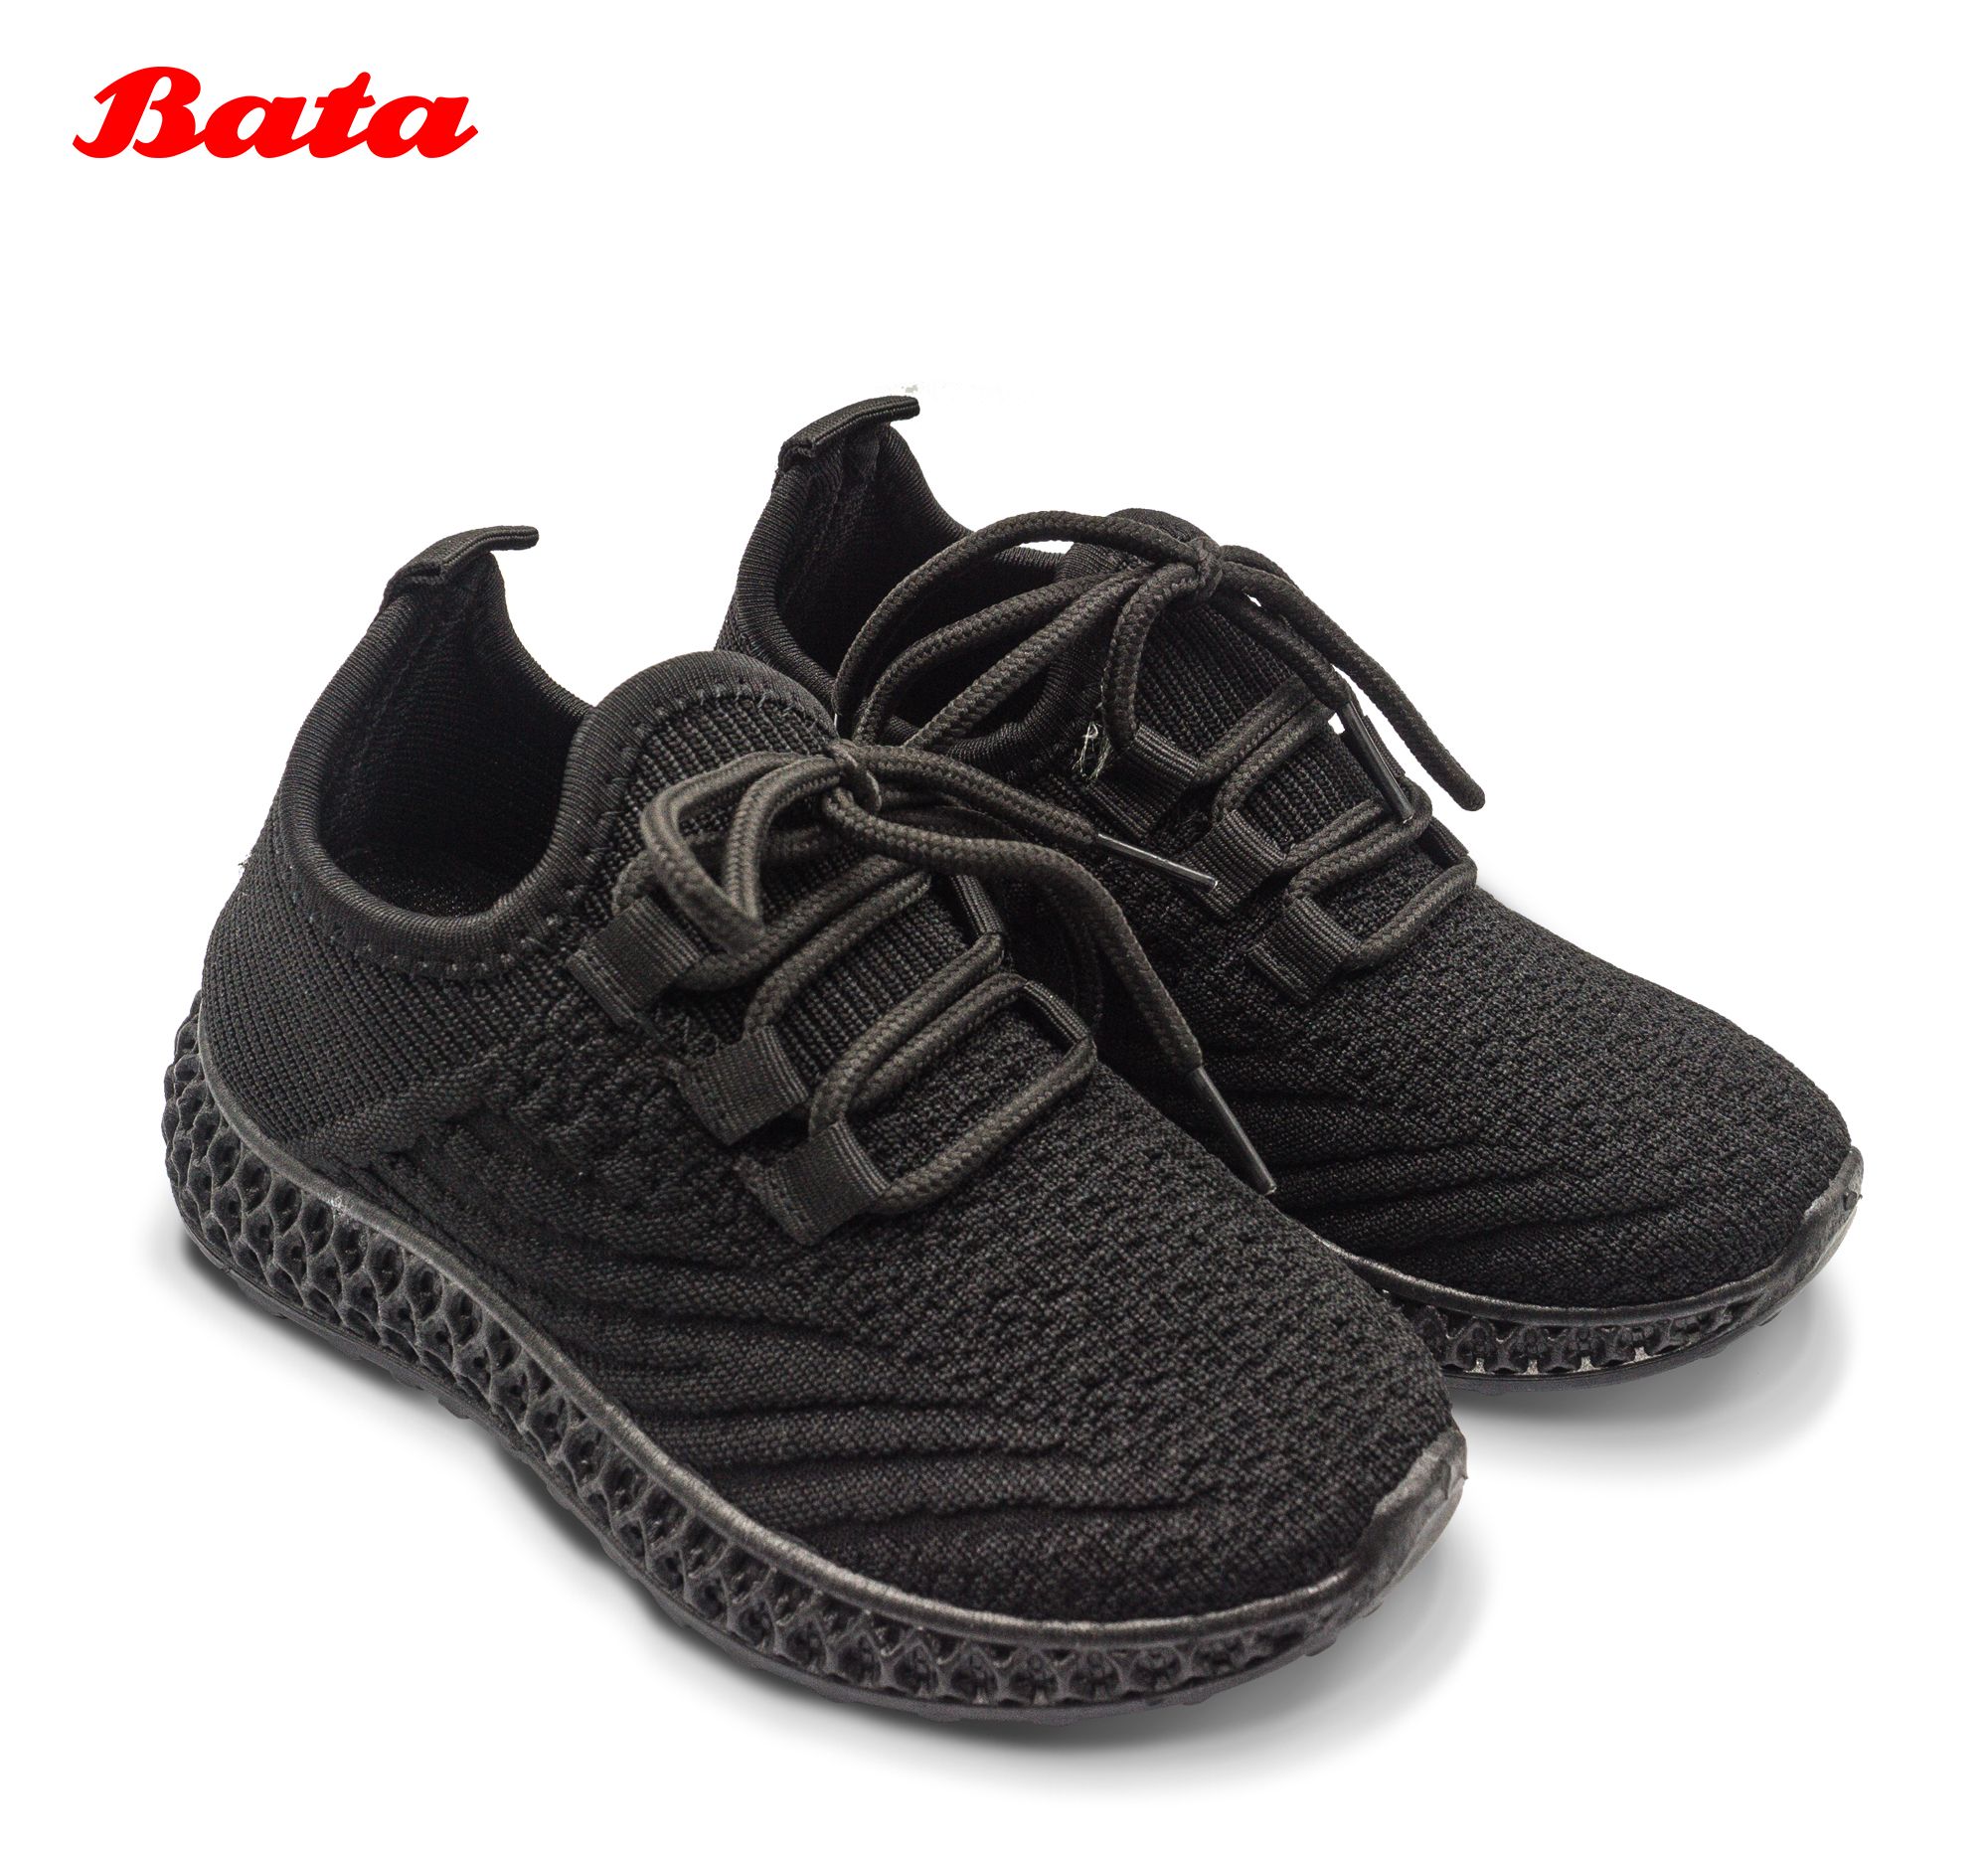 Giày trẻ em sneaker màu đen Thương hiệu Bata 359-6041